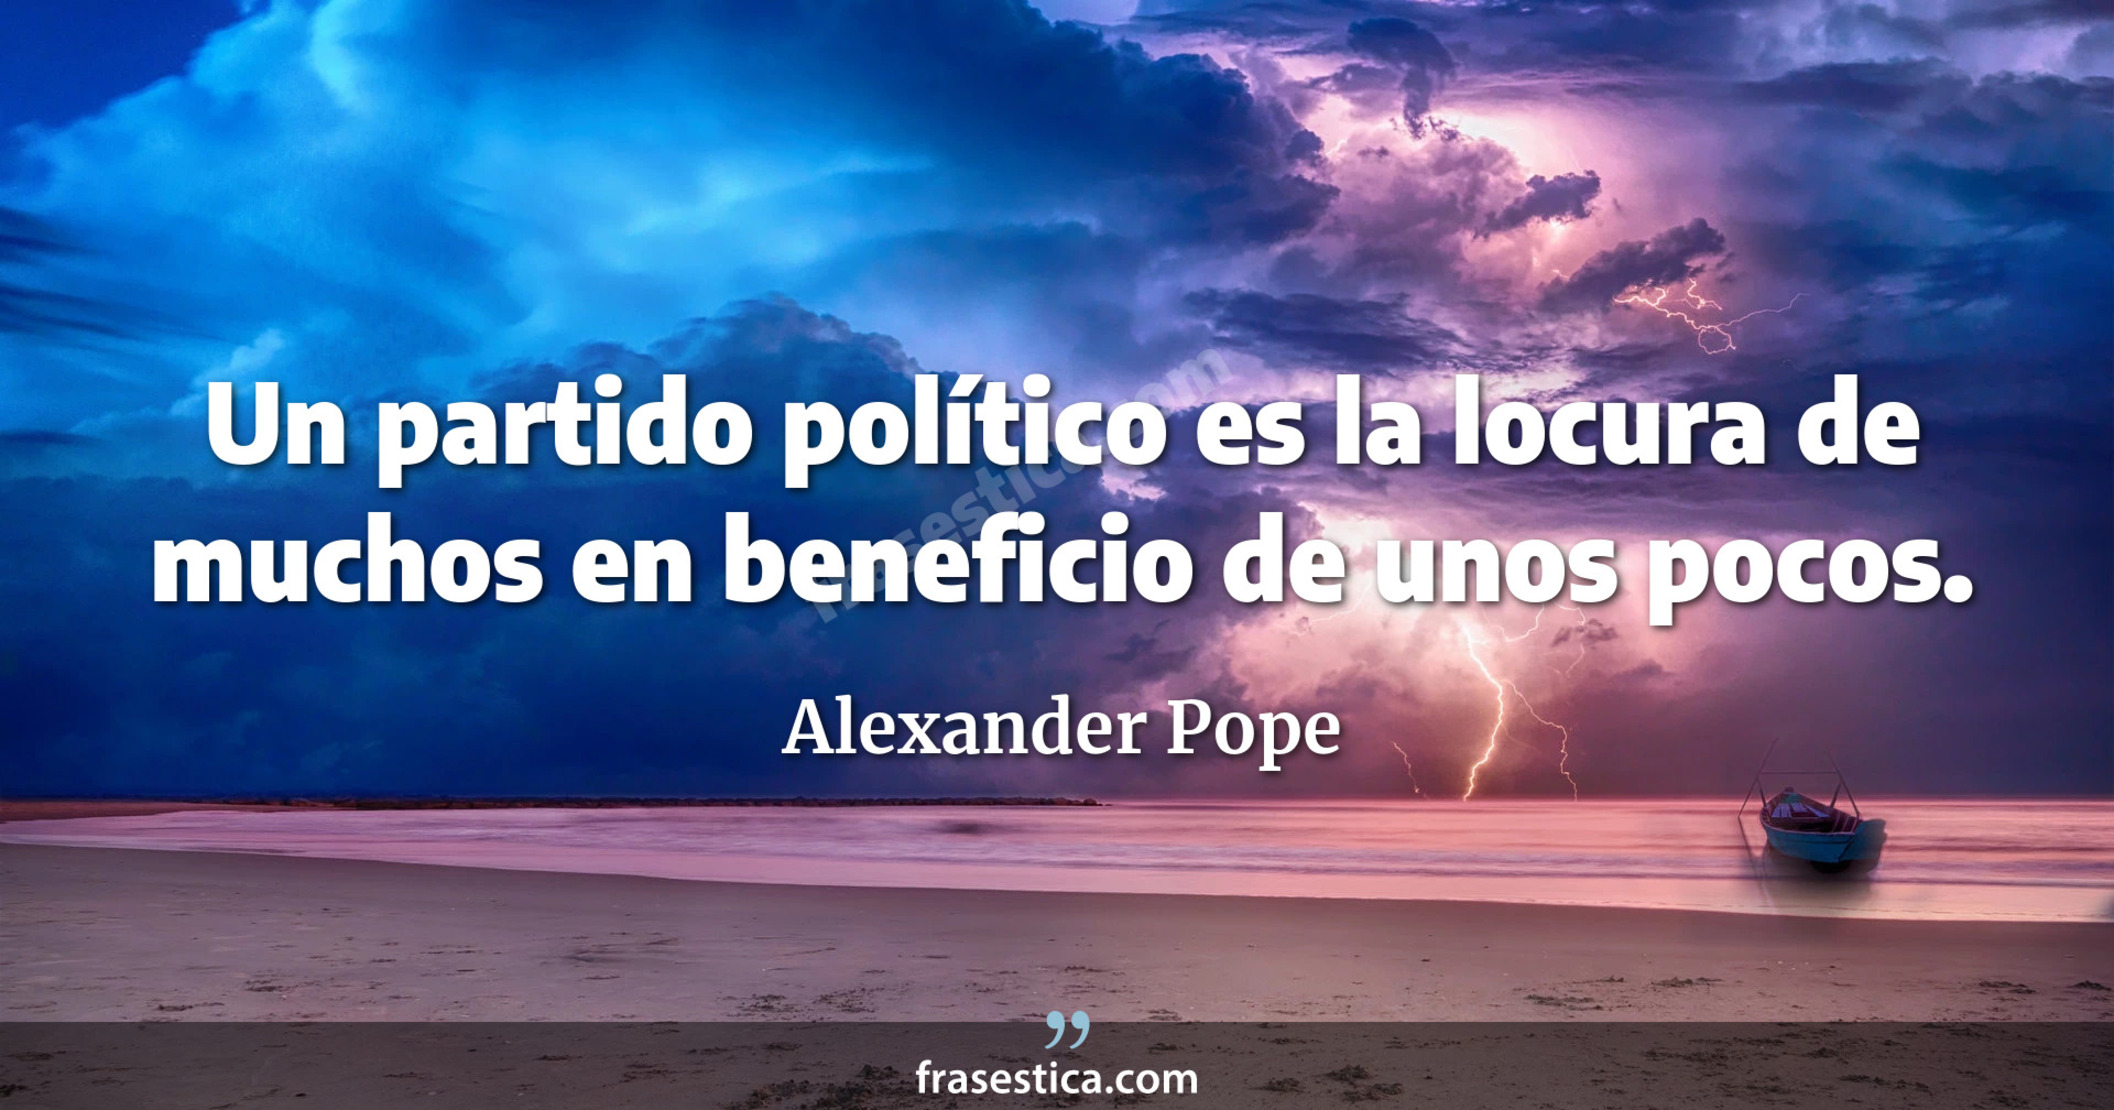 Un partido político es la locura de muchos en beneficio de unos pocos. - Alexander Pope